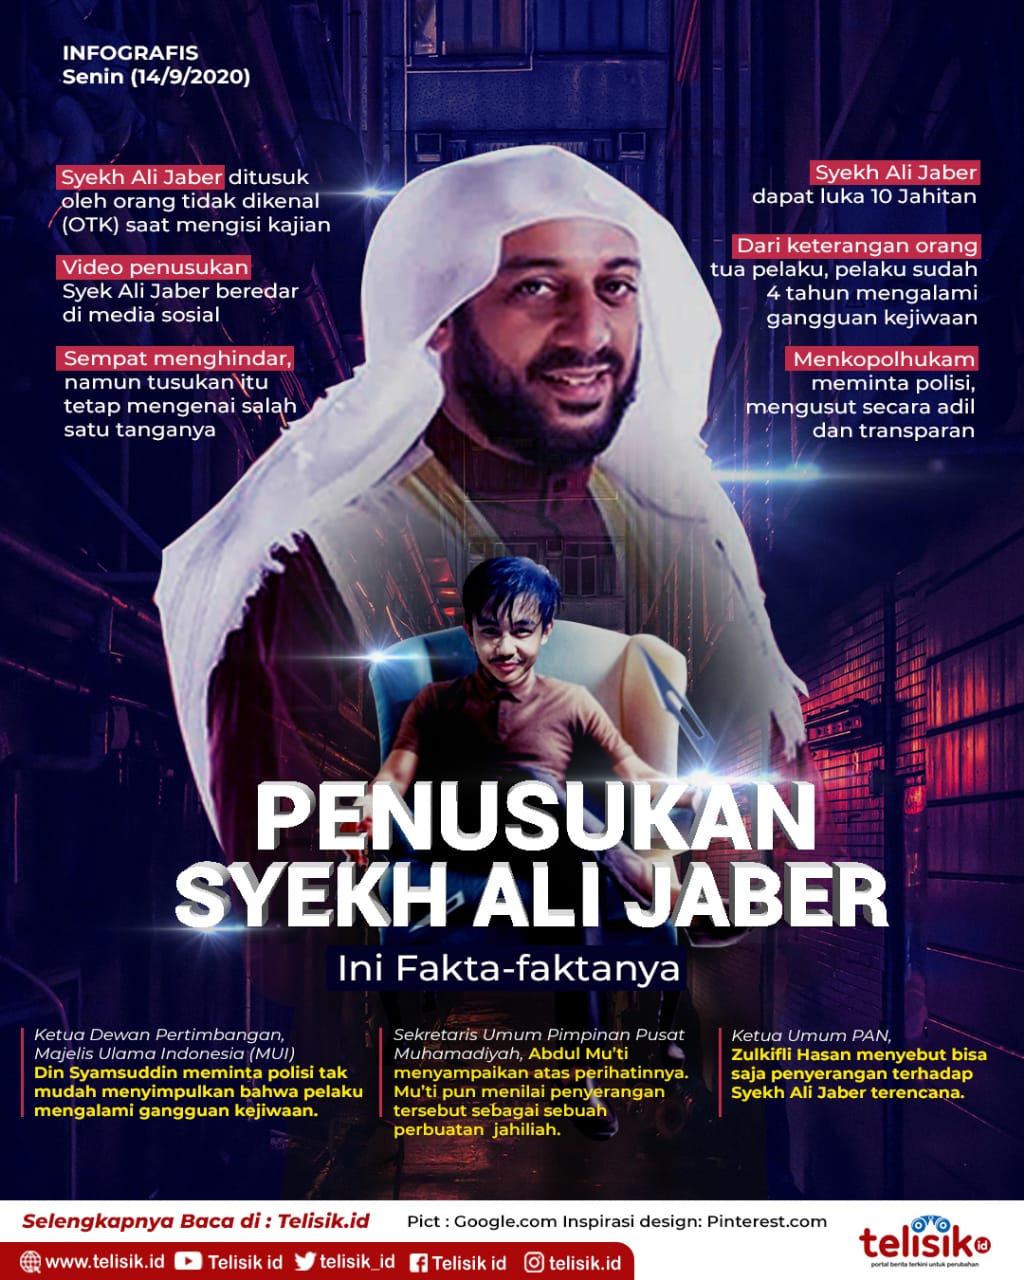 Infografis: Penusukan Syekh Ali Jaber, Ini Fakta-faktanya